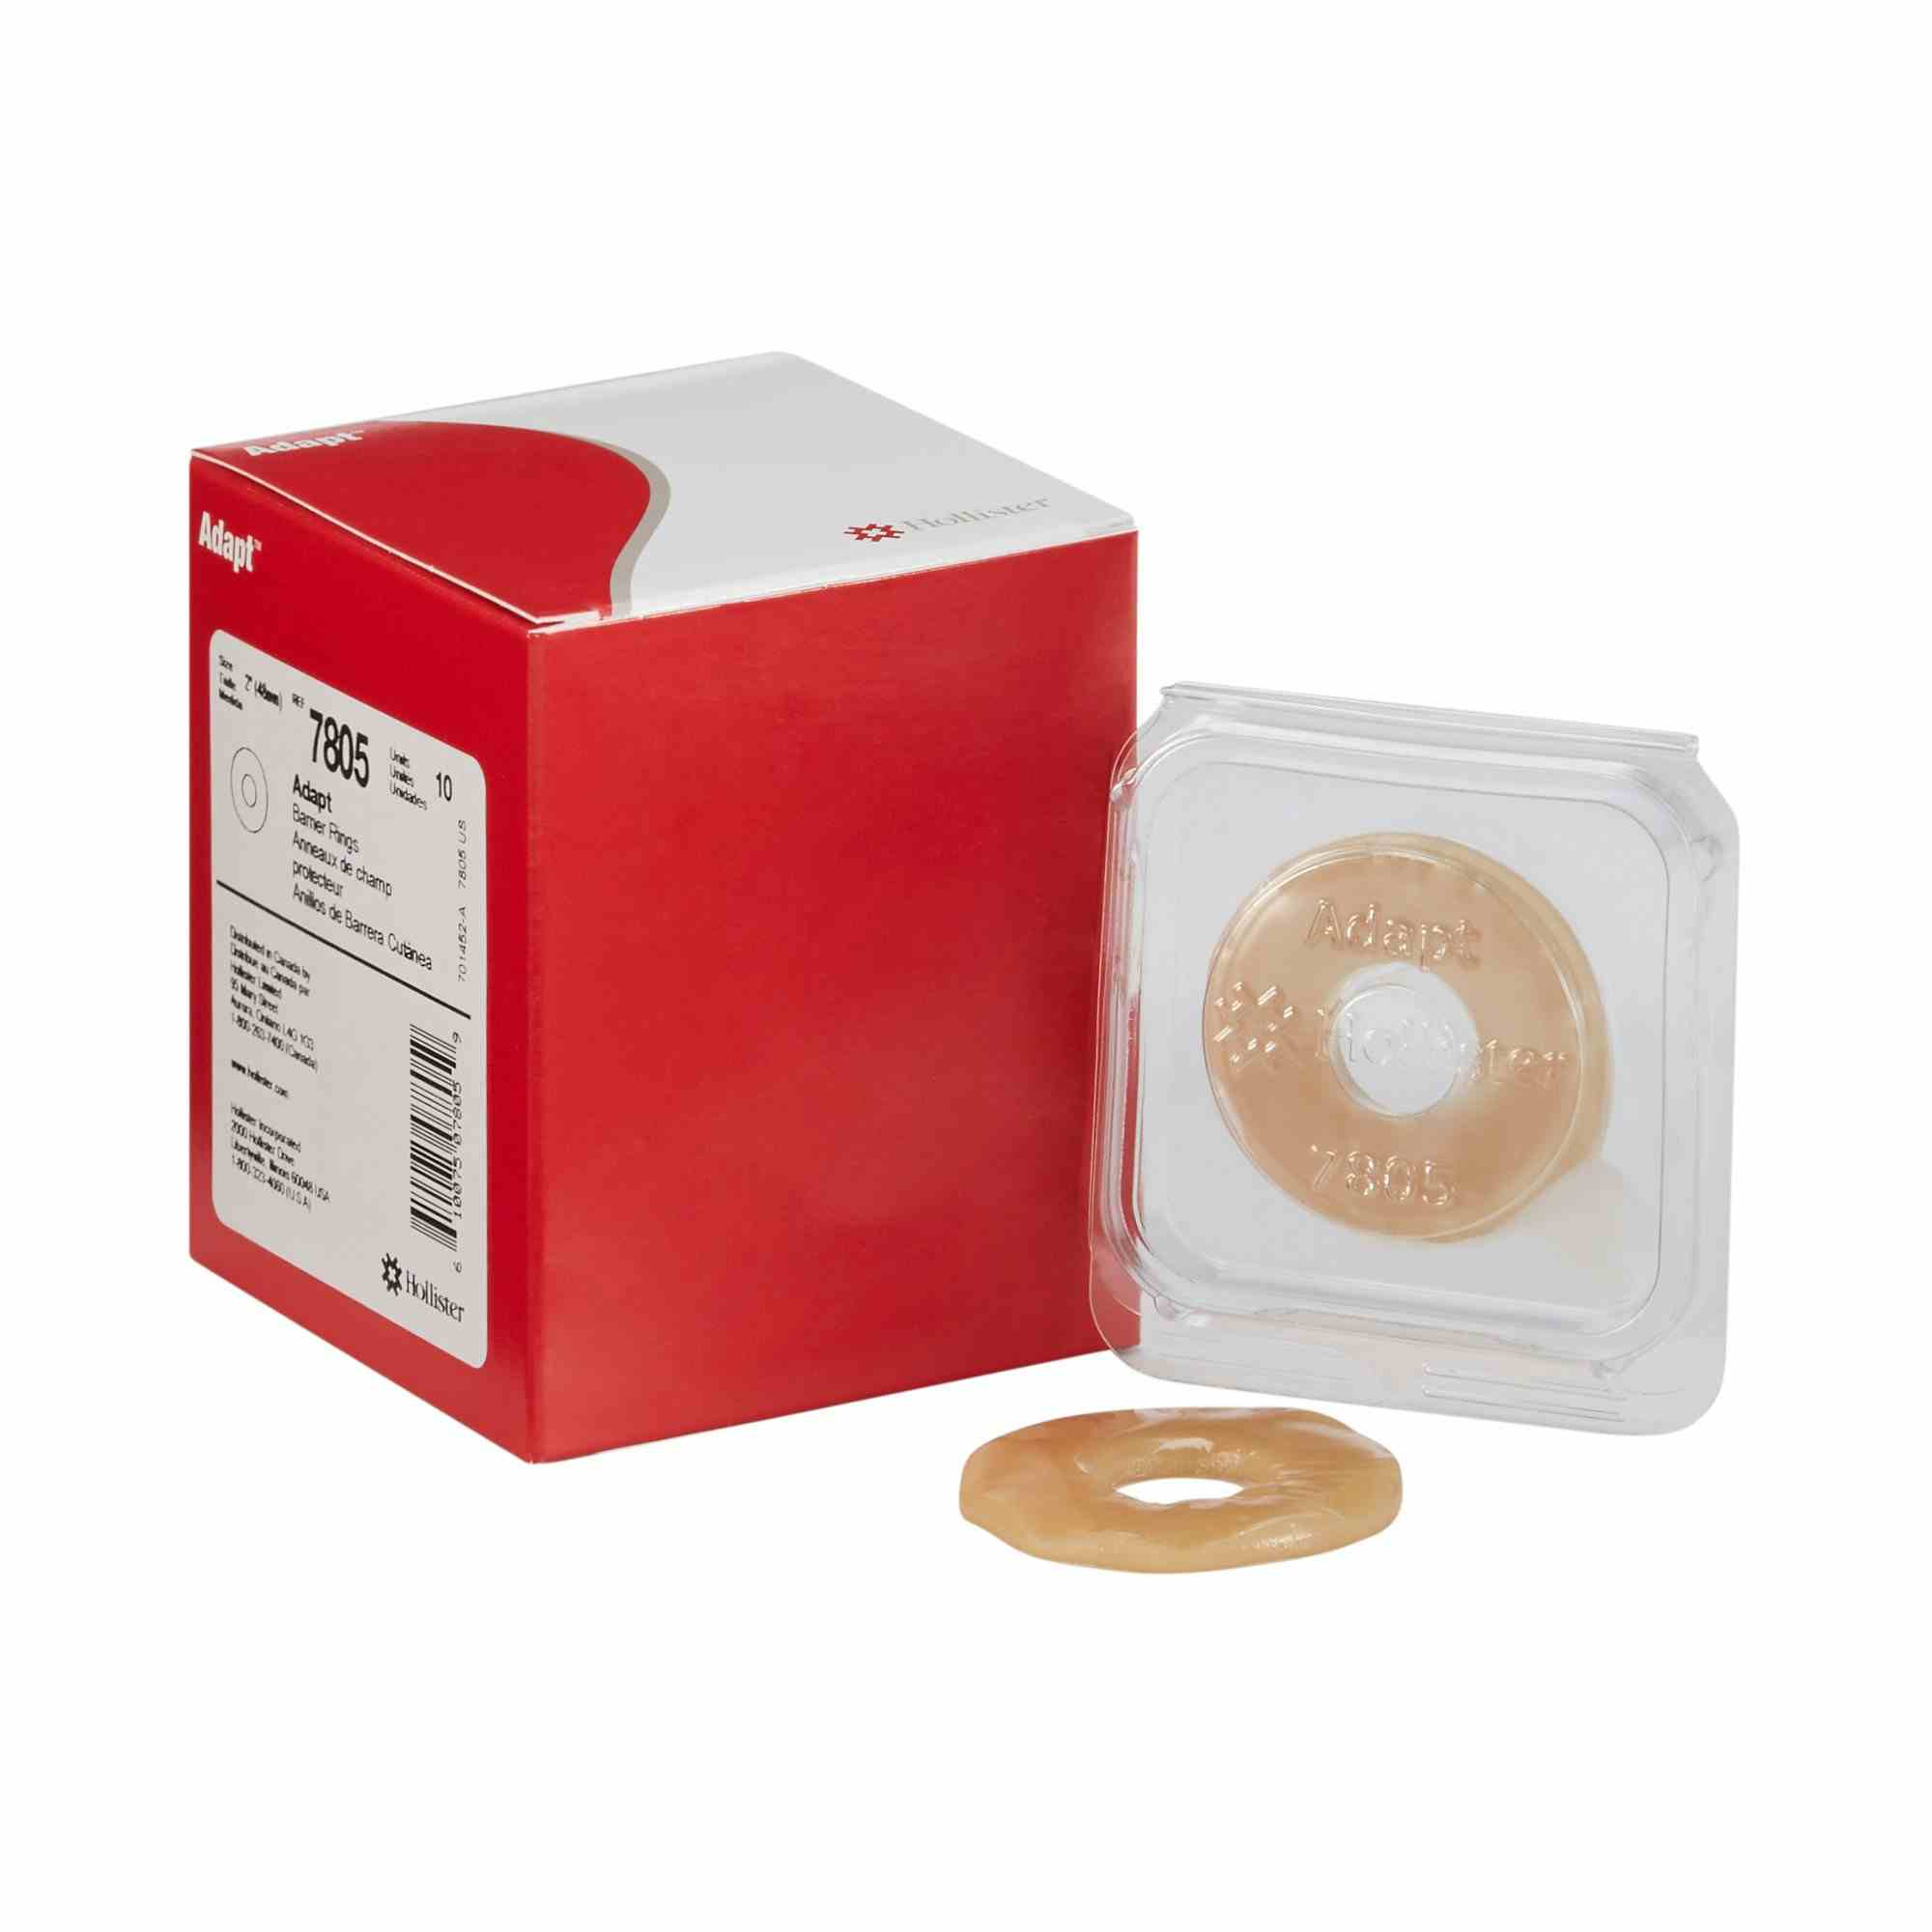 SoftFlex Hydrocolloid Skin Barrier Ring , 7805, Box of 10